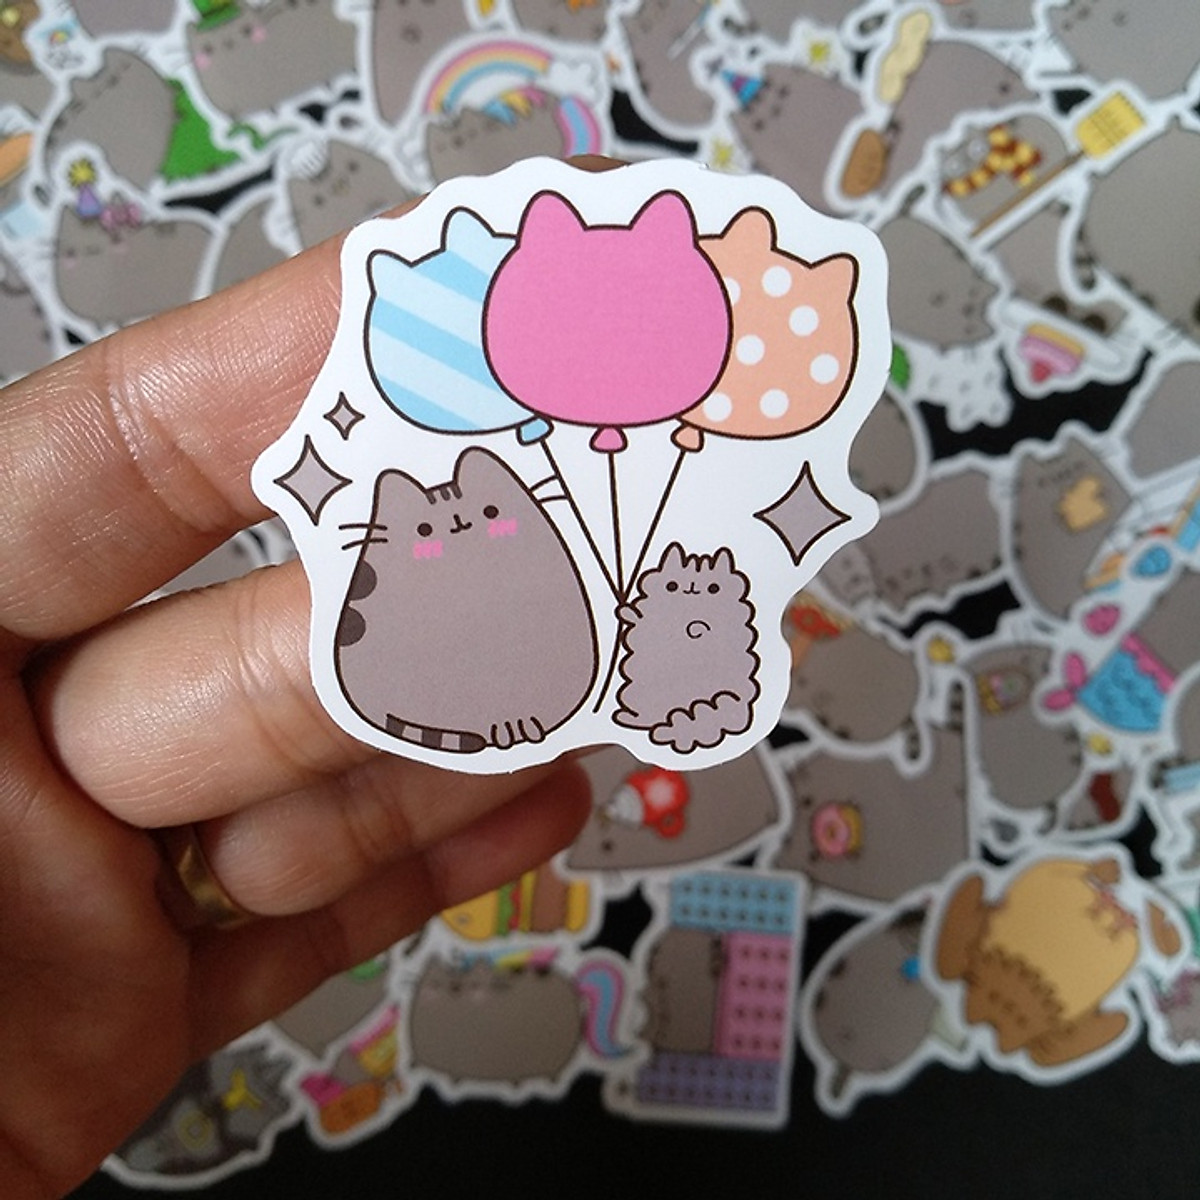 Nếu bạn yêu thích mèo Pusheen, bạn không thể bỏ lỡ những sticker vô cùng đáng yêu và hài hước tương ứng. Hãy xem ảnh để tìm hiểu những sticker tuyệt vời này.